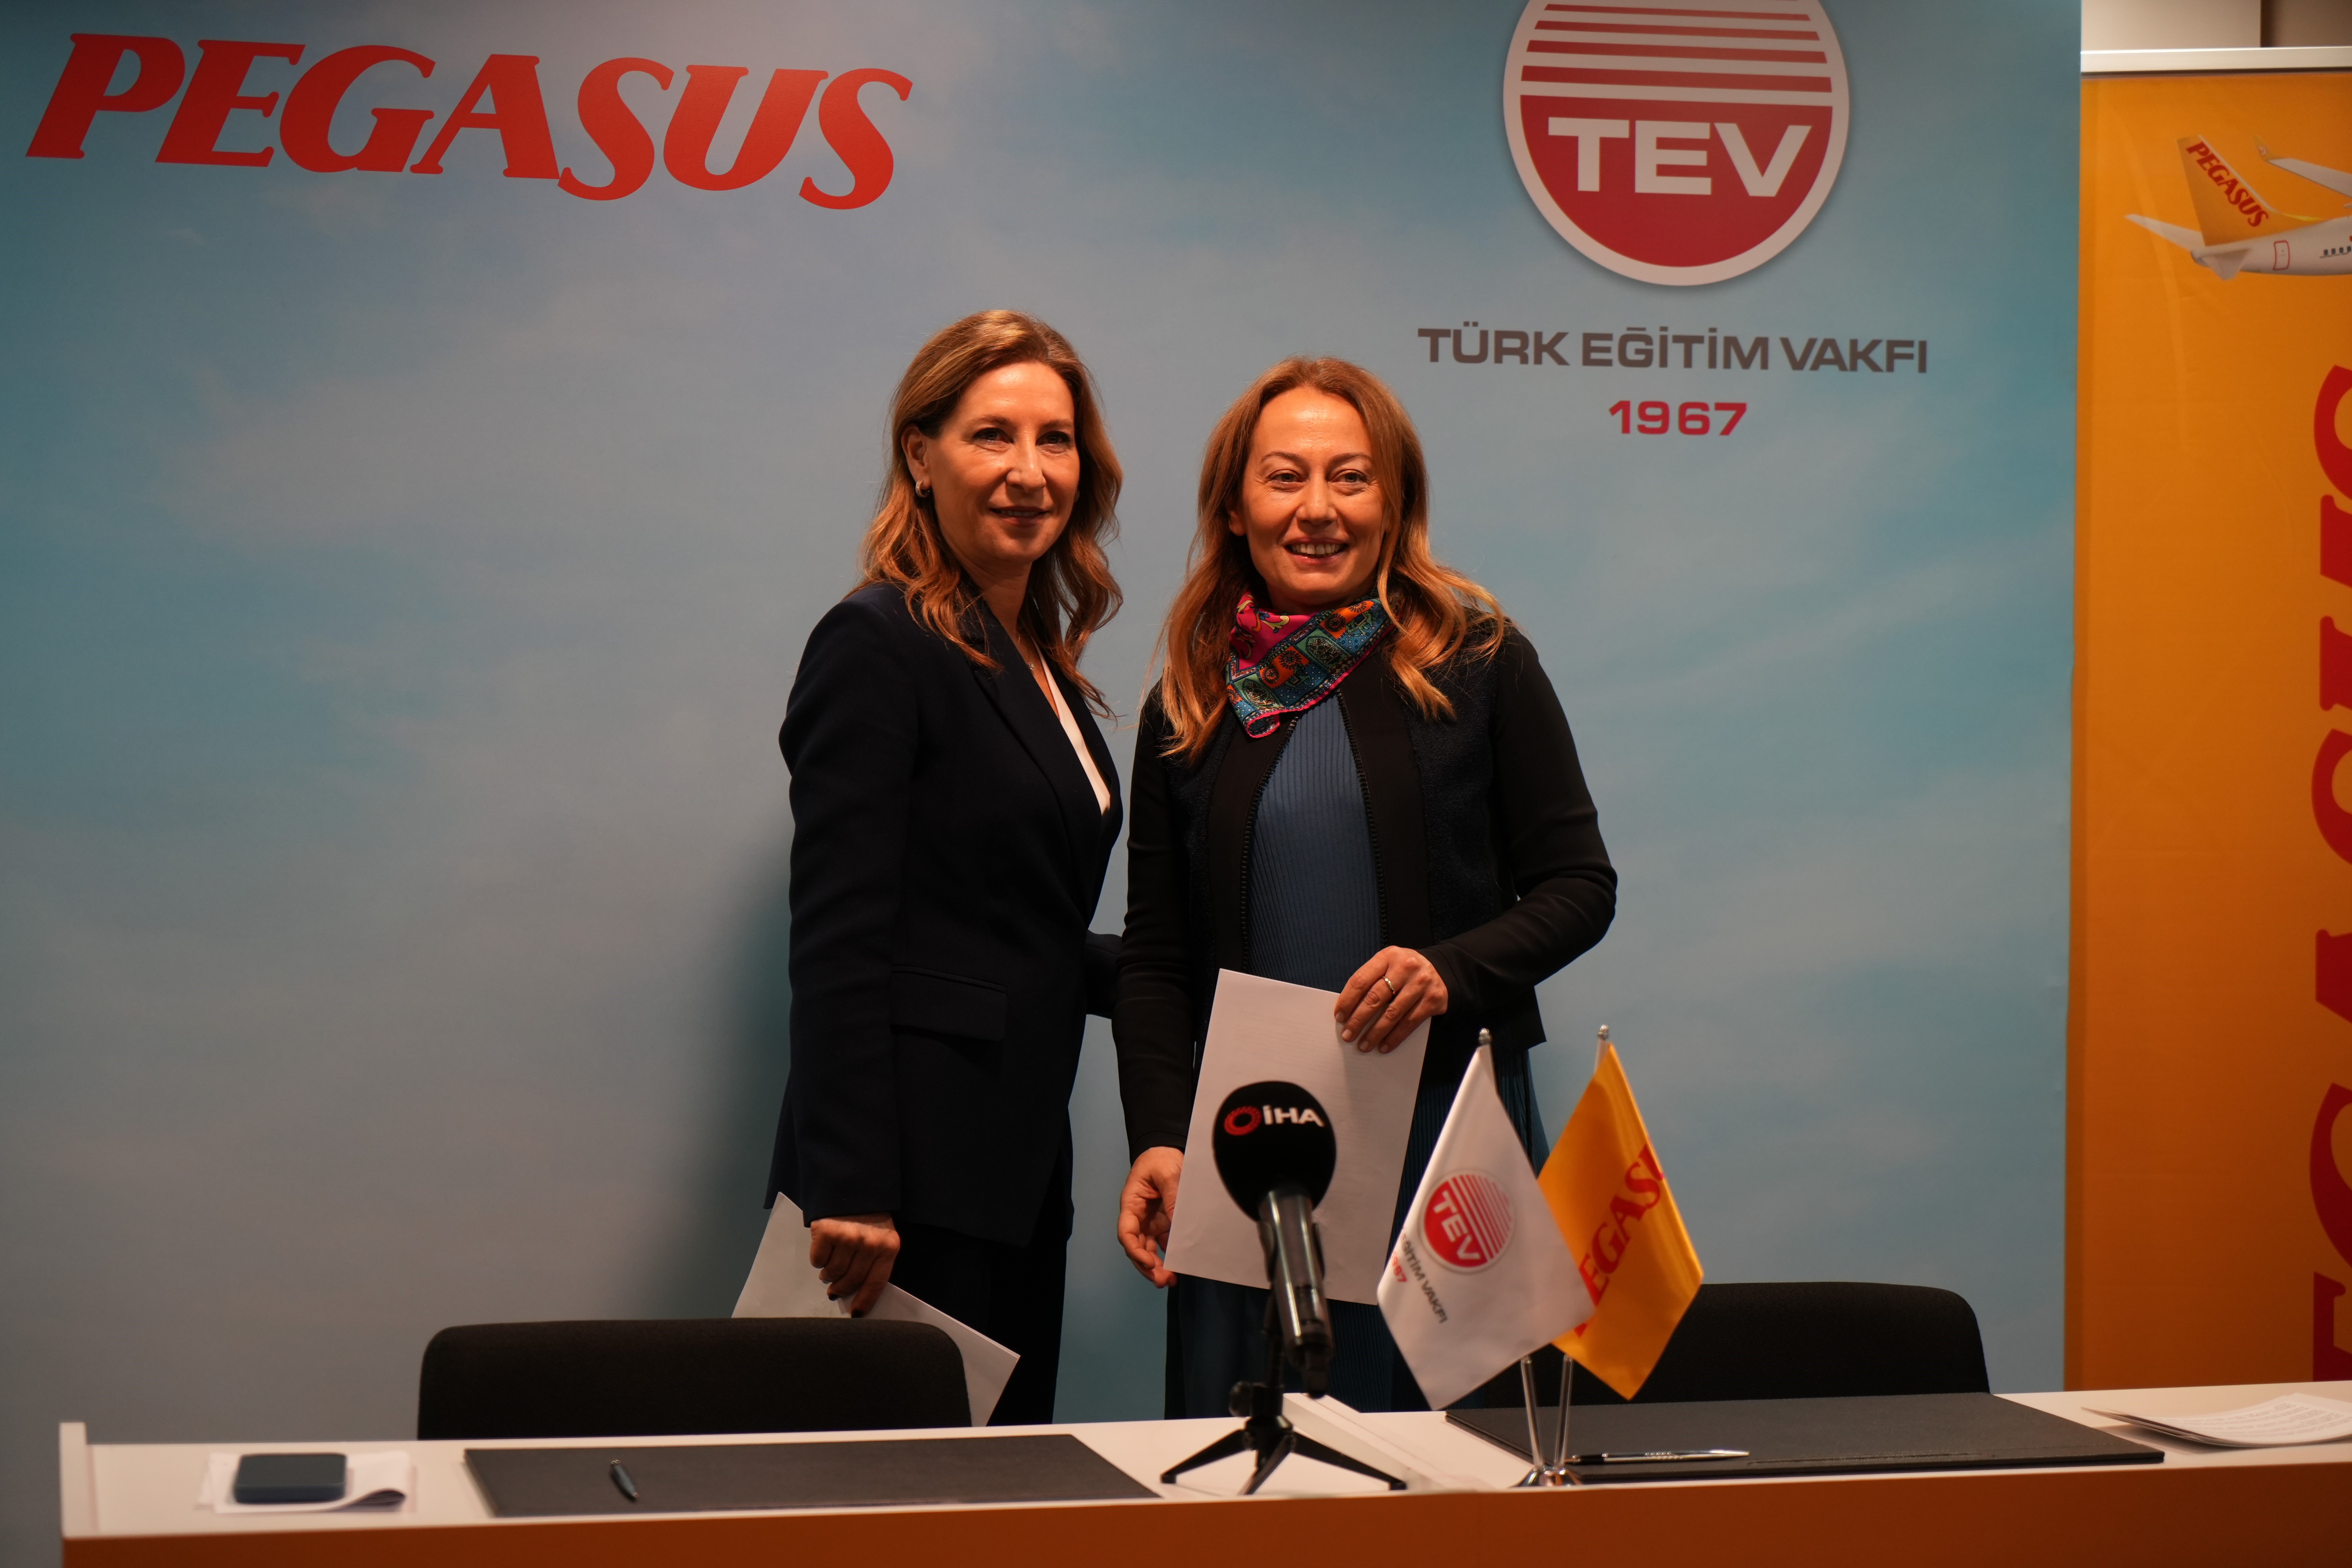 Pegasus ve TEV, 1000 kız öğrenciye üniversite bursu için imza attı